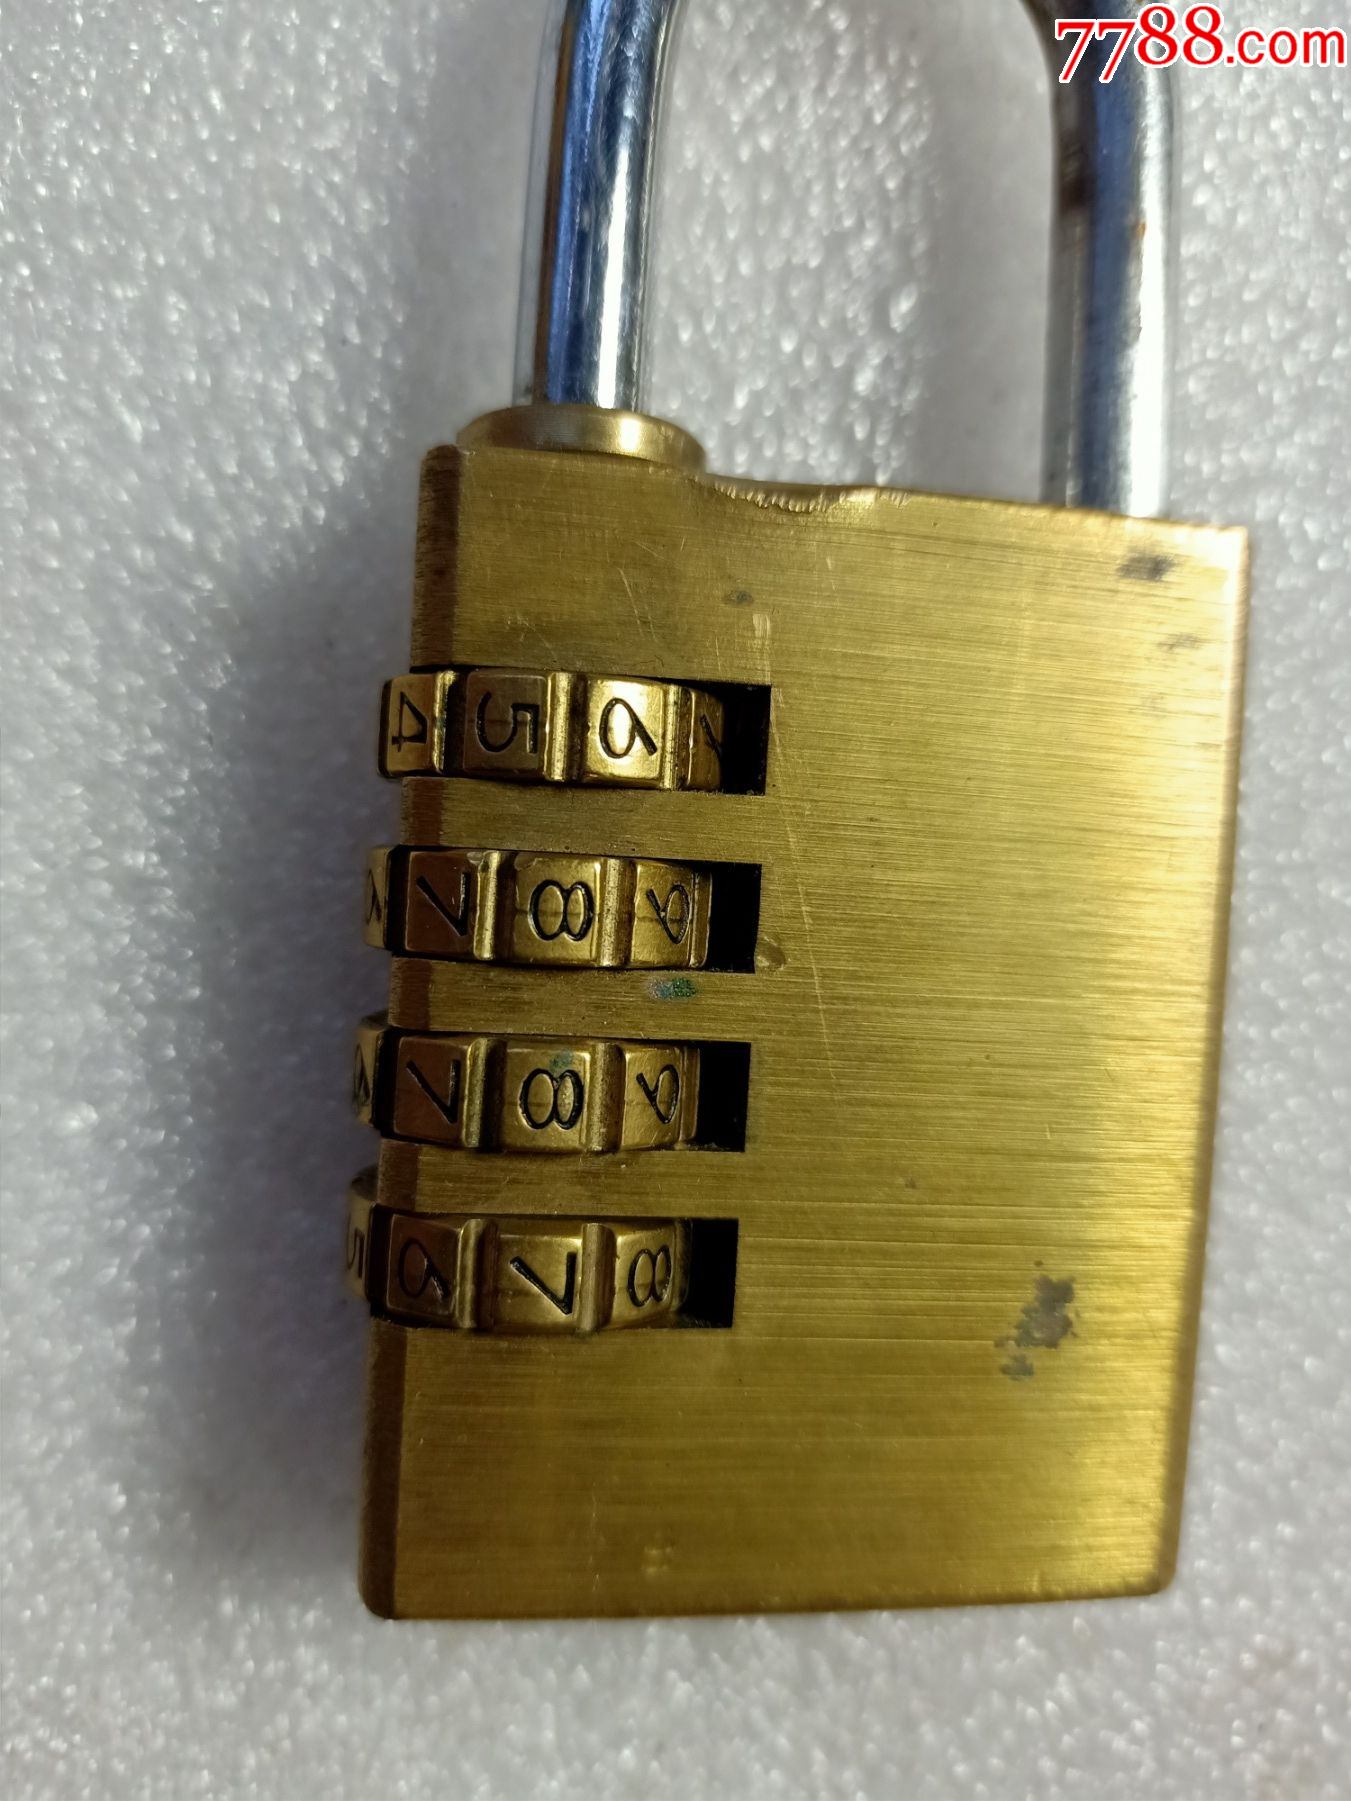 锌合金密码锁仿铜密码挂锁底部四位密码4位号码锁挂锁仓库大门锁-阿里巴巴